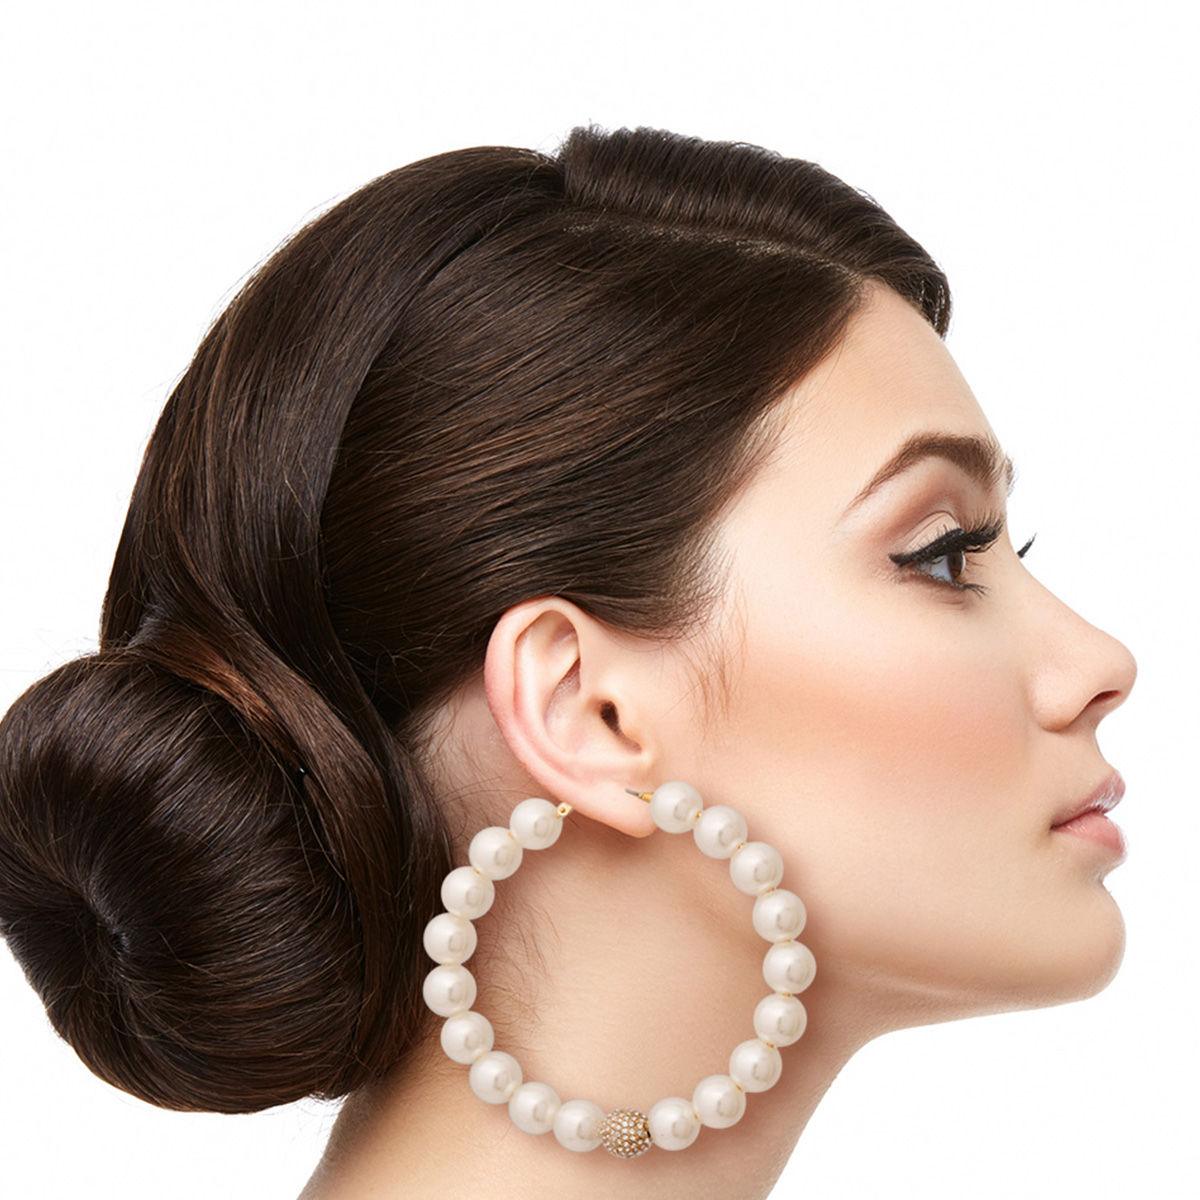 Faux Beaded Pearl and Pave Rhinestone Hoop Earrings